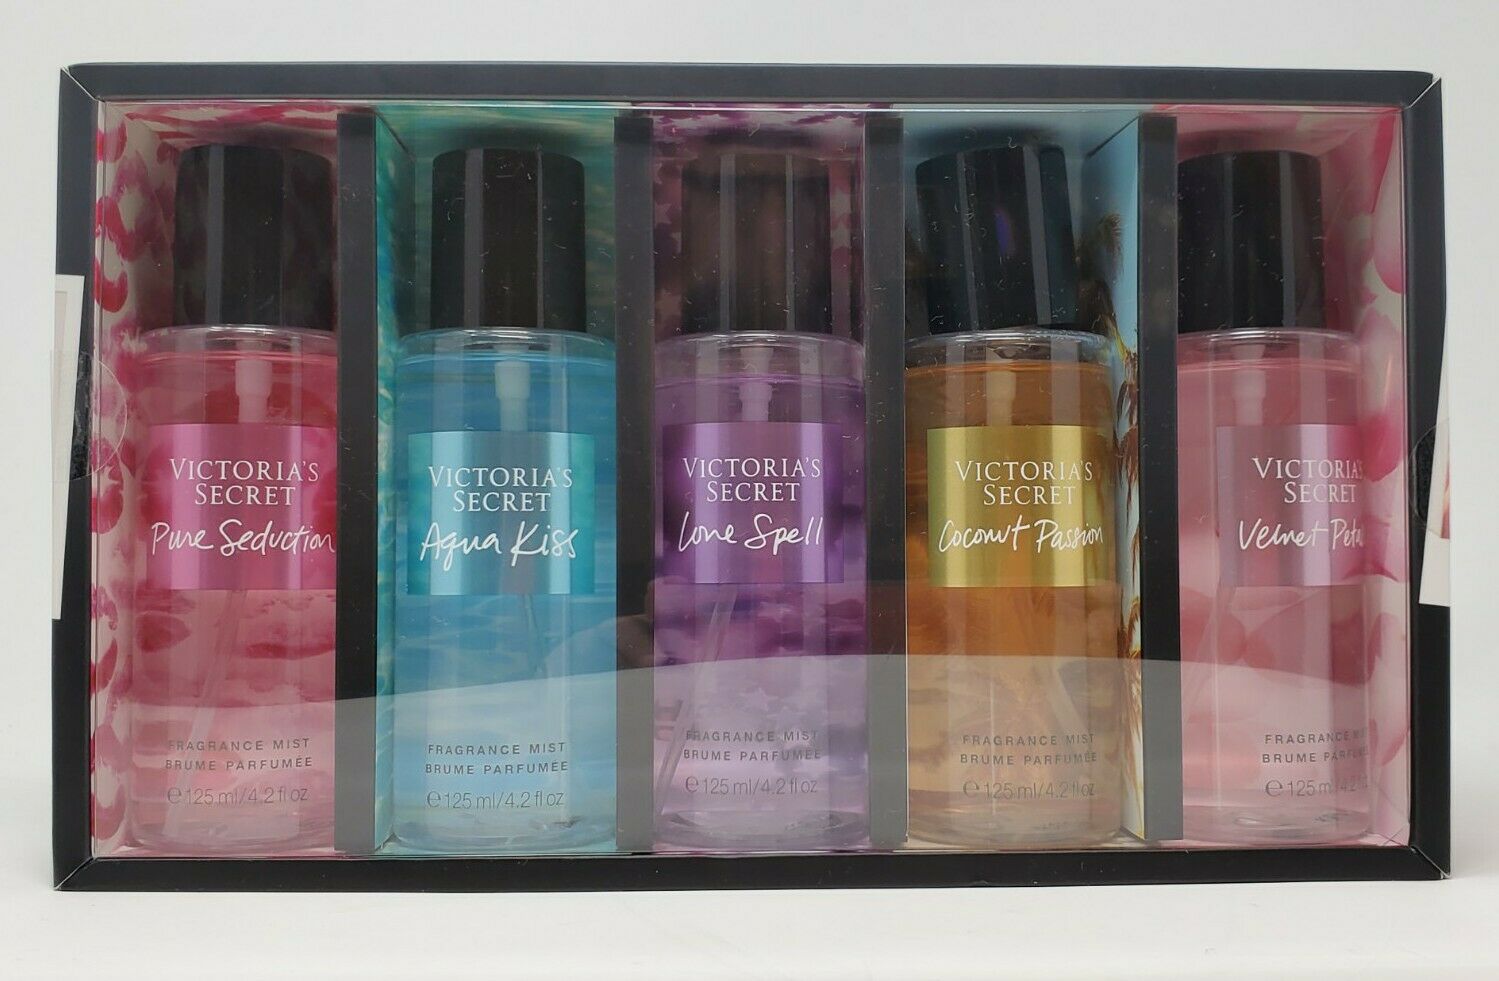 nadering Koninklijke familie dronken Victoria's Secret Assorted Body Mists 5 pc 4.2 oz. Bottles Gift Set NI –  Think Pink And More